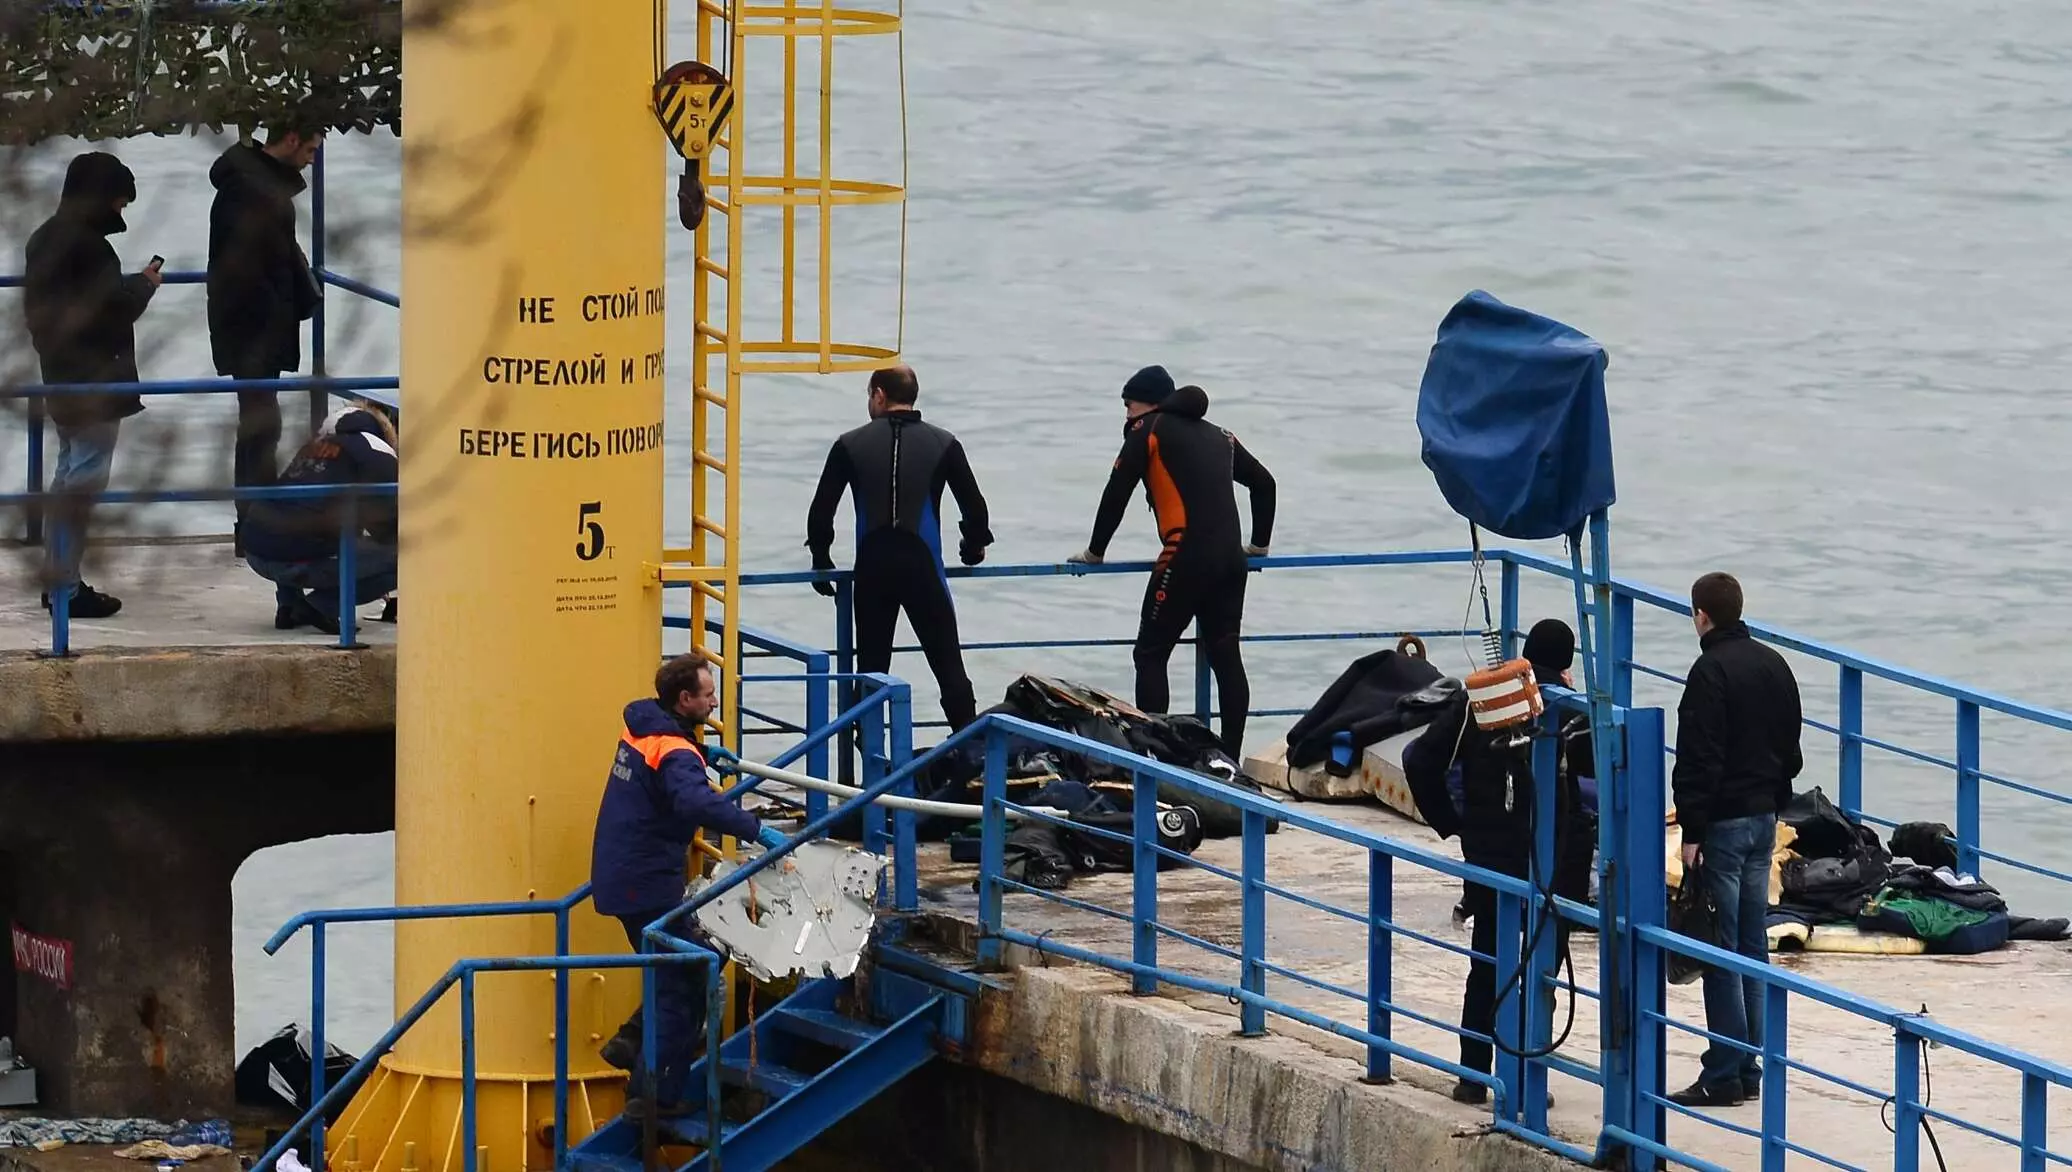 Самолет улетел, но так и не вернулся: пять лет назад над черным морем потерпел крушение ту-154, направлявшийся в сирию из сочи